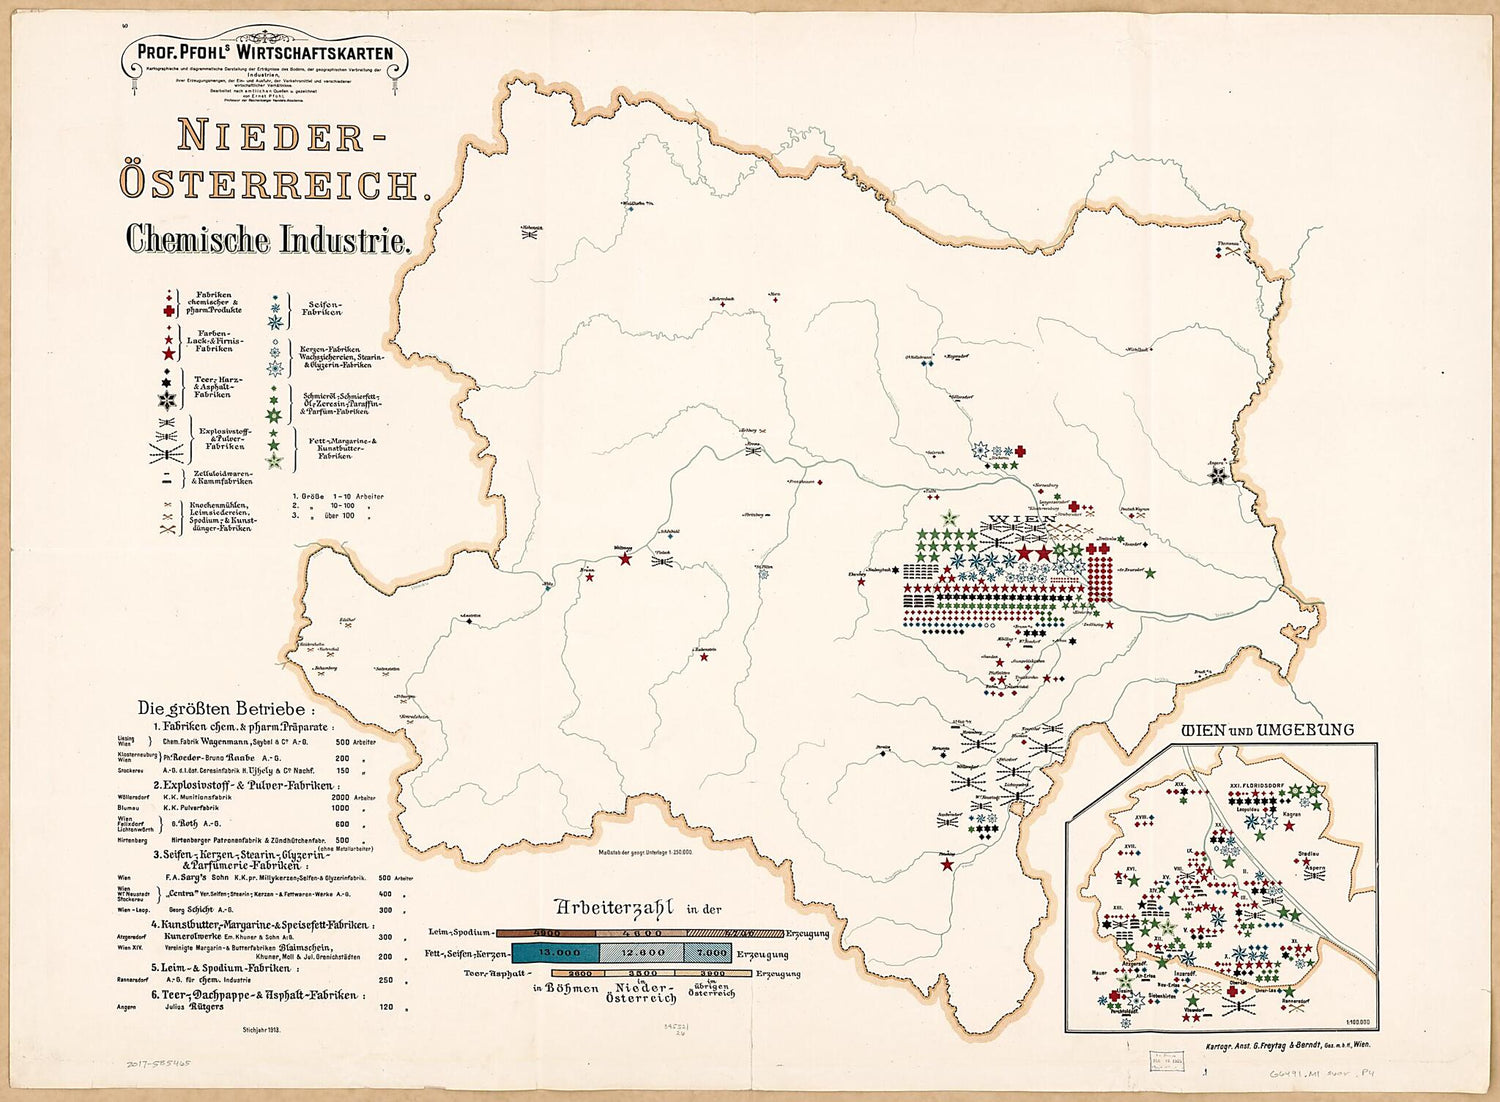 This old map of Nieder-Osterrreich Chemische Industrie from Prof. Pfohls Wirtschaftskarten from 1913 was created by Ernst Pfohl in 1913